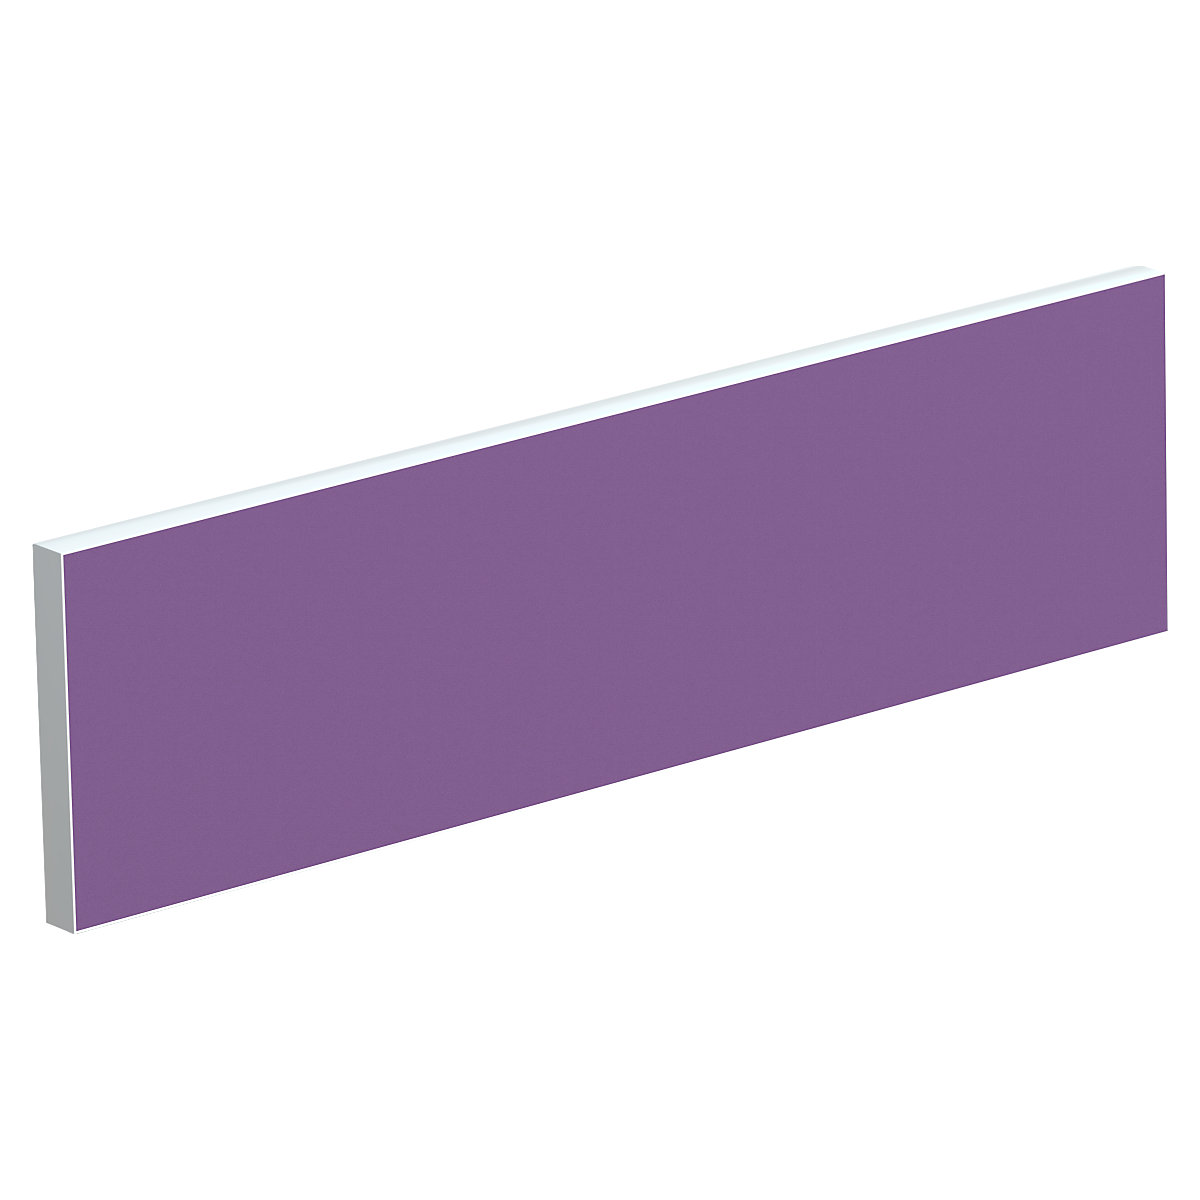 Tischtrennwand für Teamschreibtische, Breite 1600 mm, Bezug lila